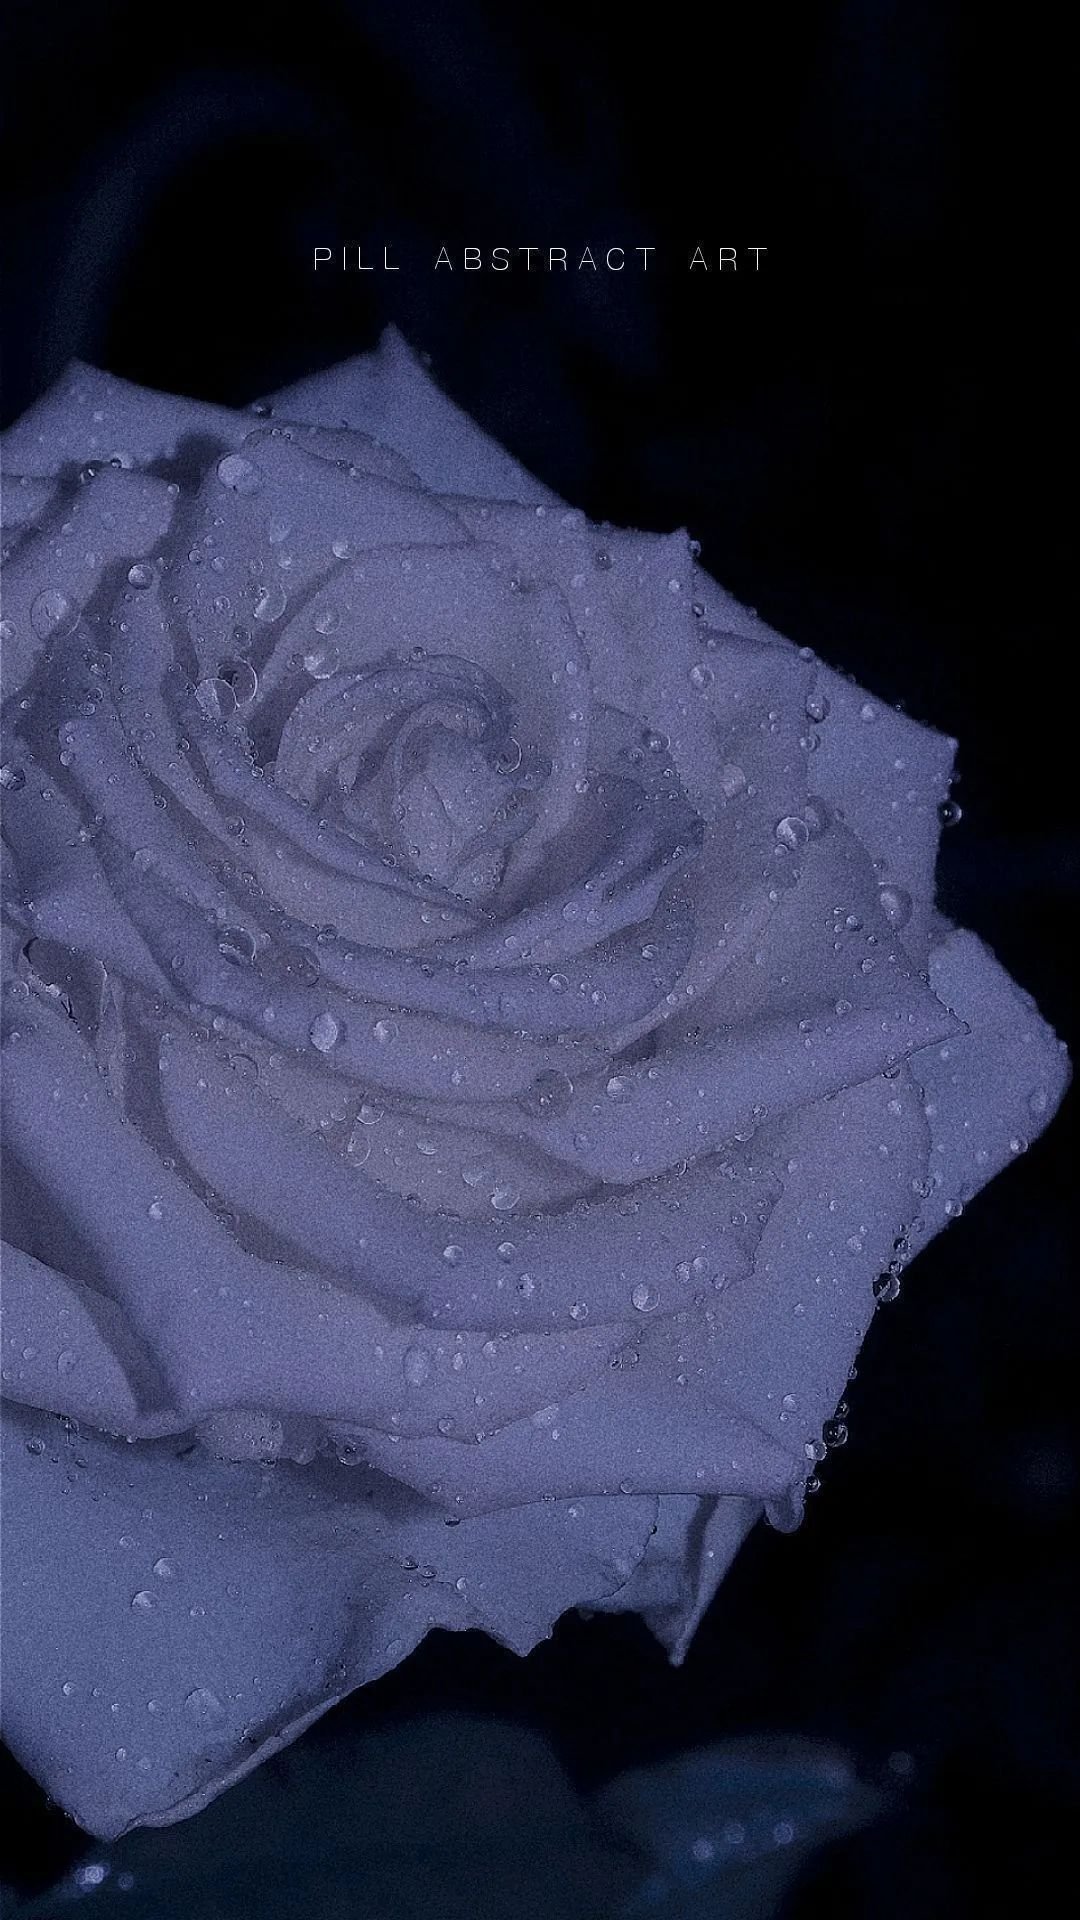 白玫瑰伤感图片